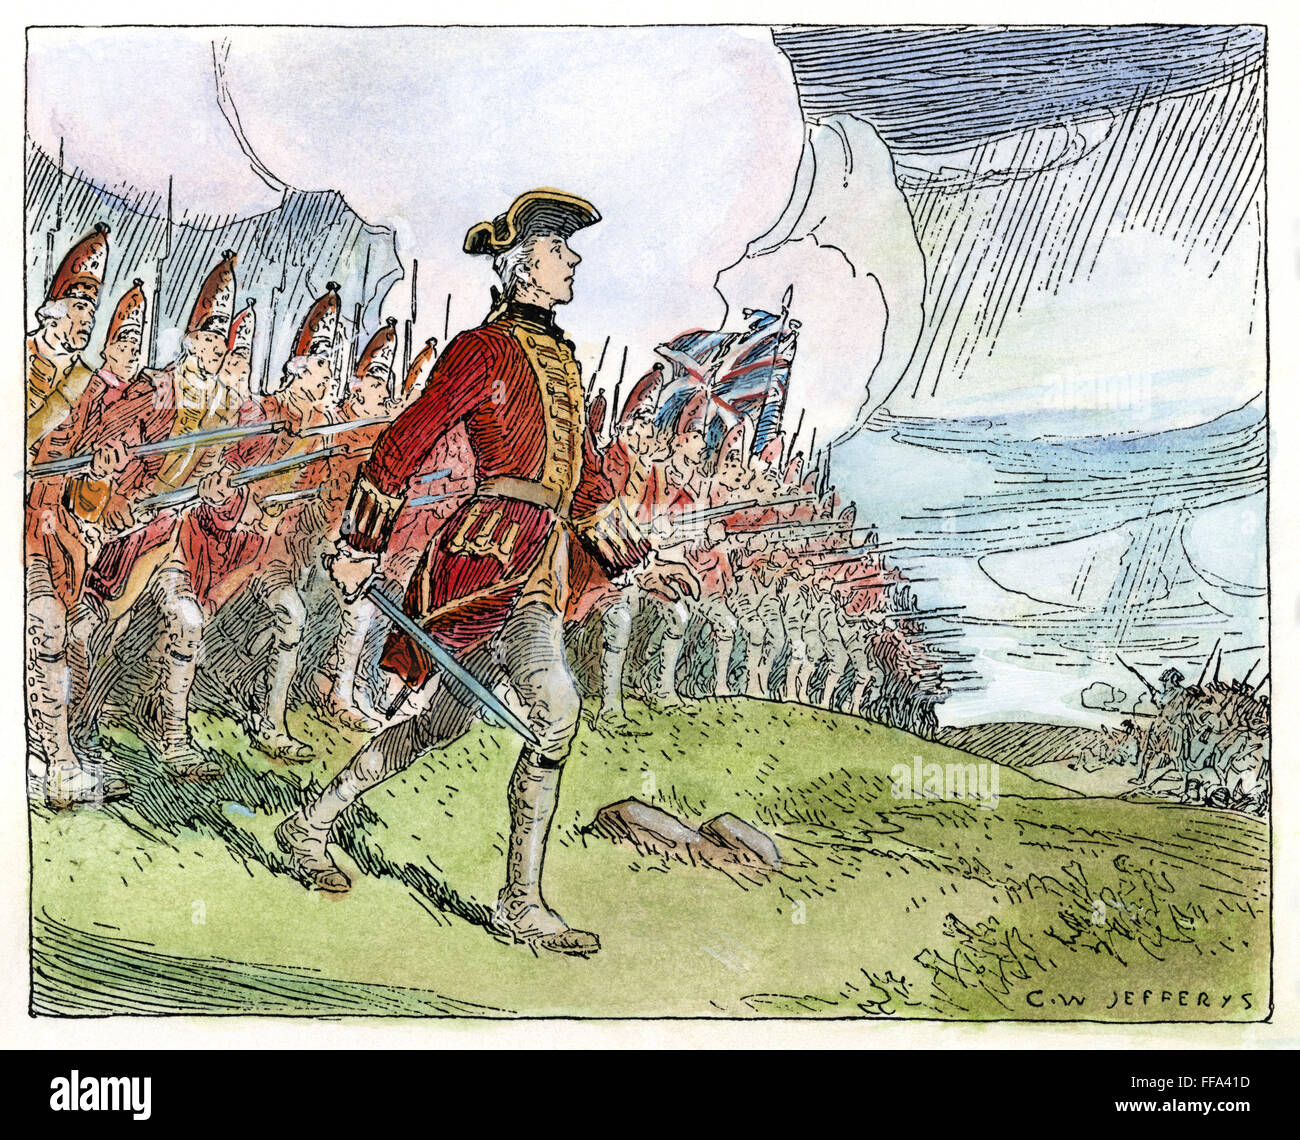 WOLFE a Quebec, 1759. /NGeneral James Wolfe leader della British 'sottile linea rossa' nella battaglia contro i francesi sulle pianure di Abramo al di fuori di Quebec City, 13 settembre 1759. Disegno di C.W. Jefferys. Foto Stock